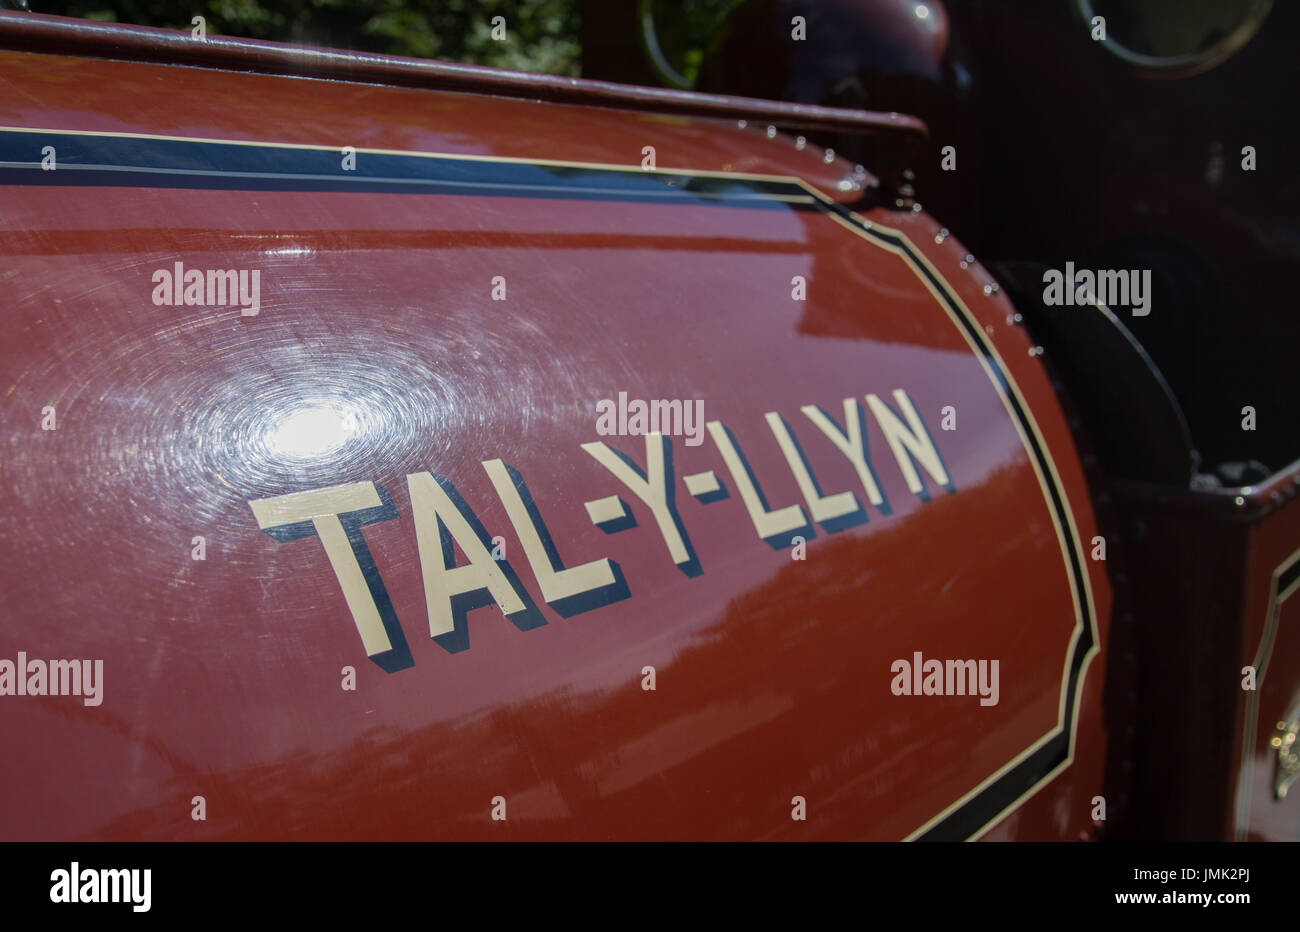 Talyllyn Railway saddle tank steam locomotive named Tal-y-llyn in the sun Stock Photo